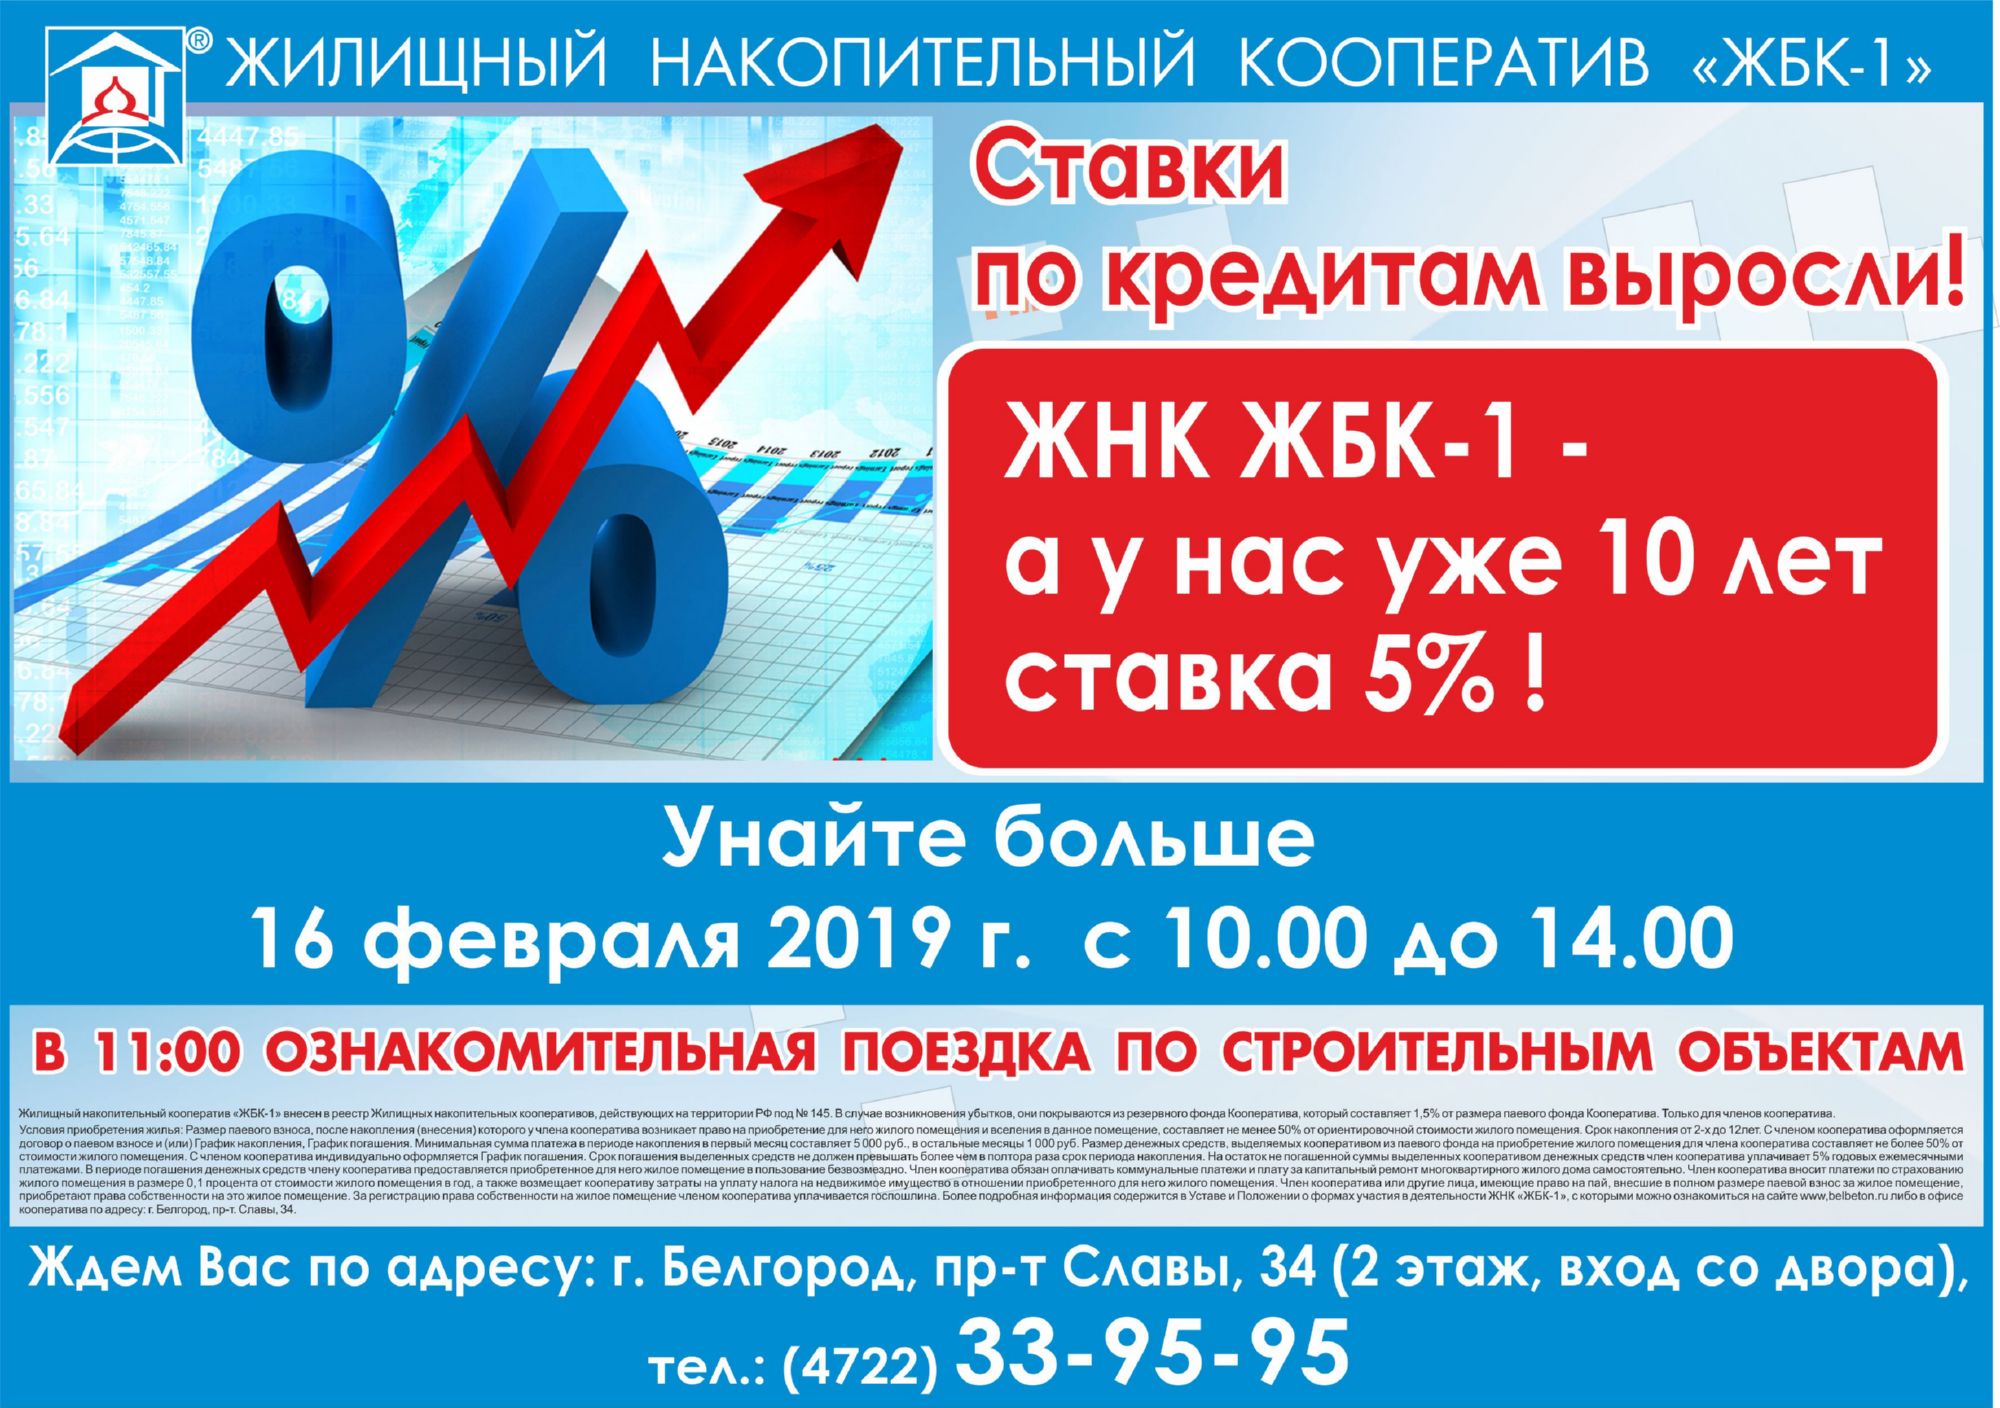  В ЖНК ЖБК-1  уже 10 лет фиксированная ставка  - 5% годовых! 